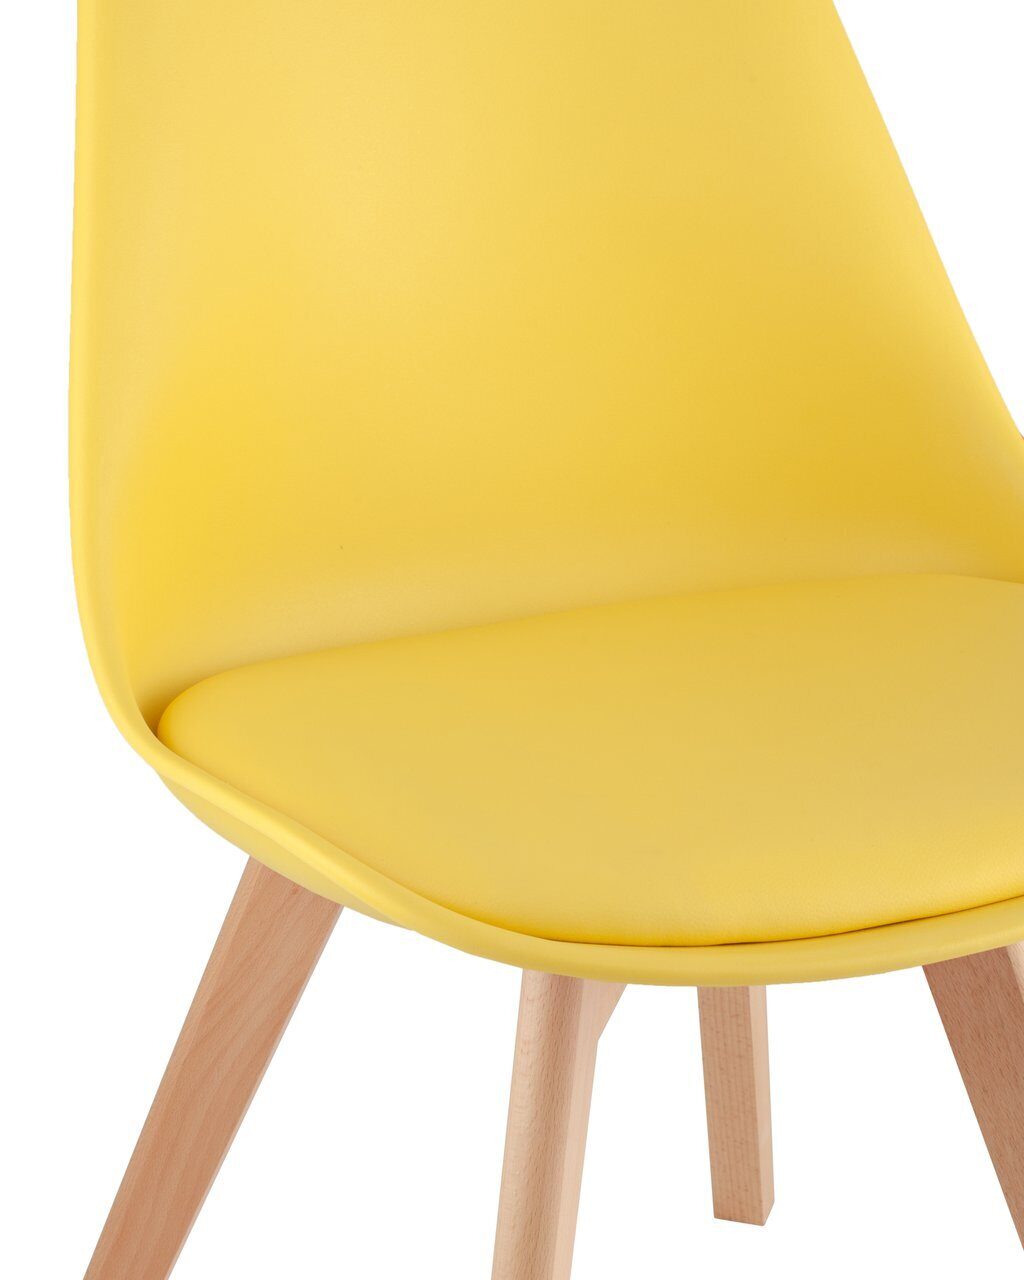 Желтый стул у детей